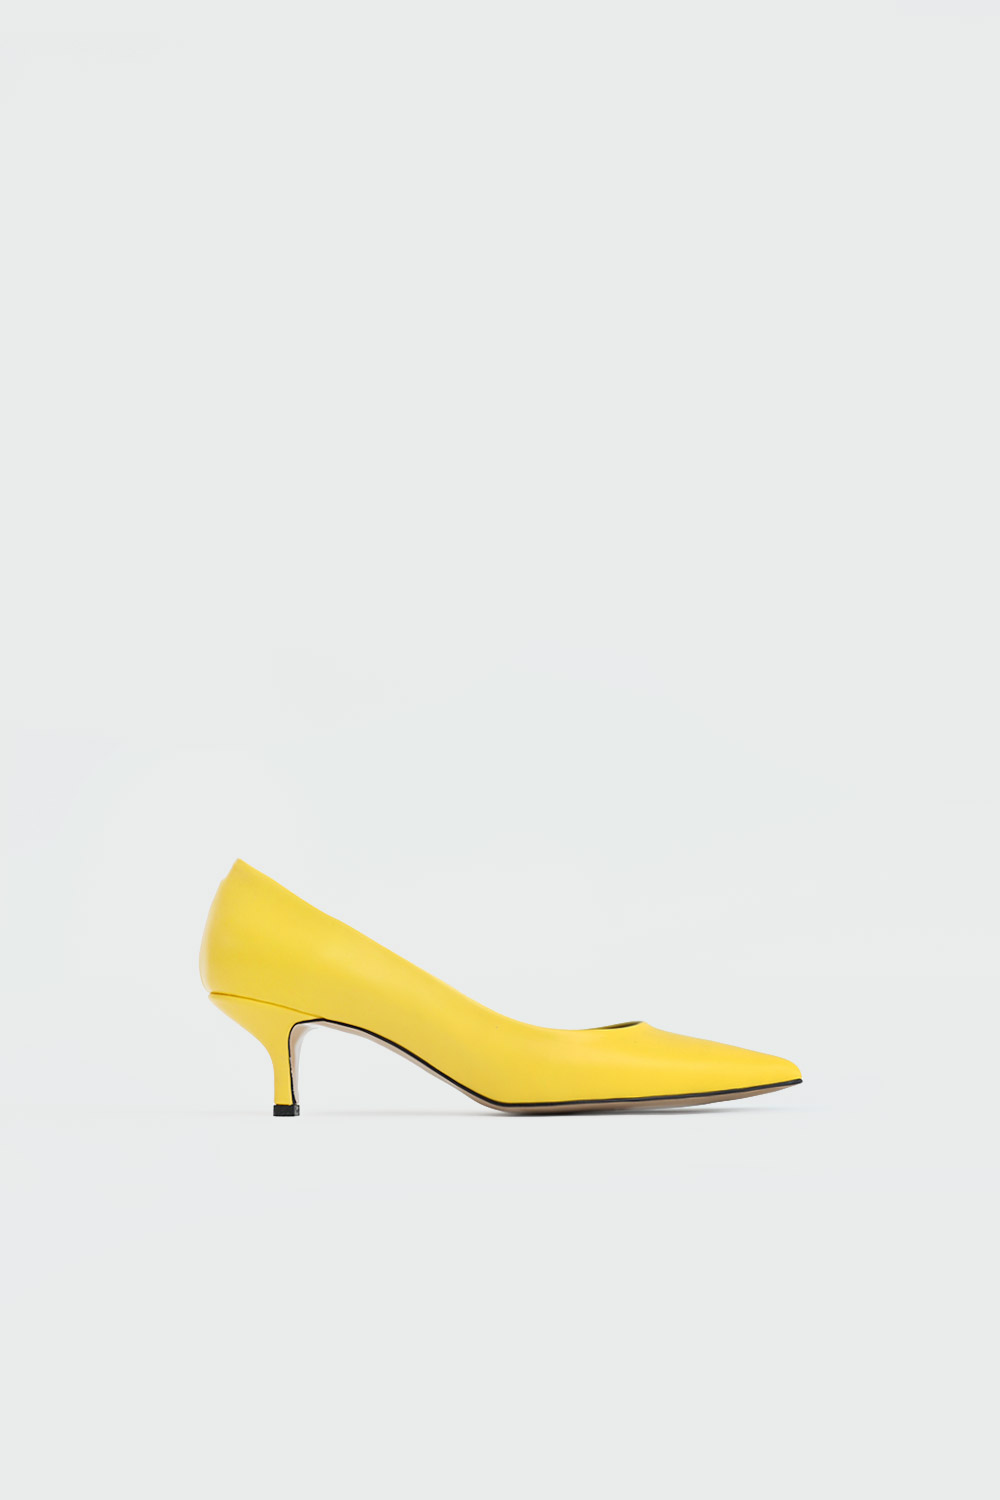 Sophia Sivri Burun Stiletto Sarı Kadın Topuklu